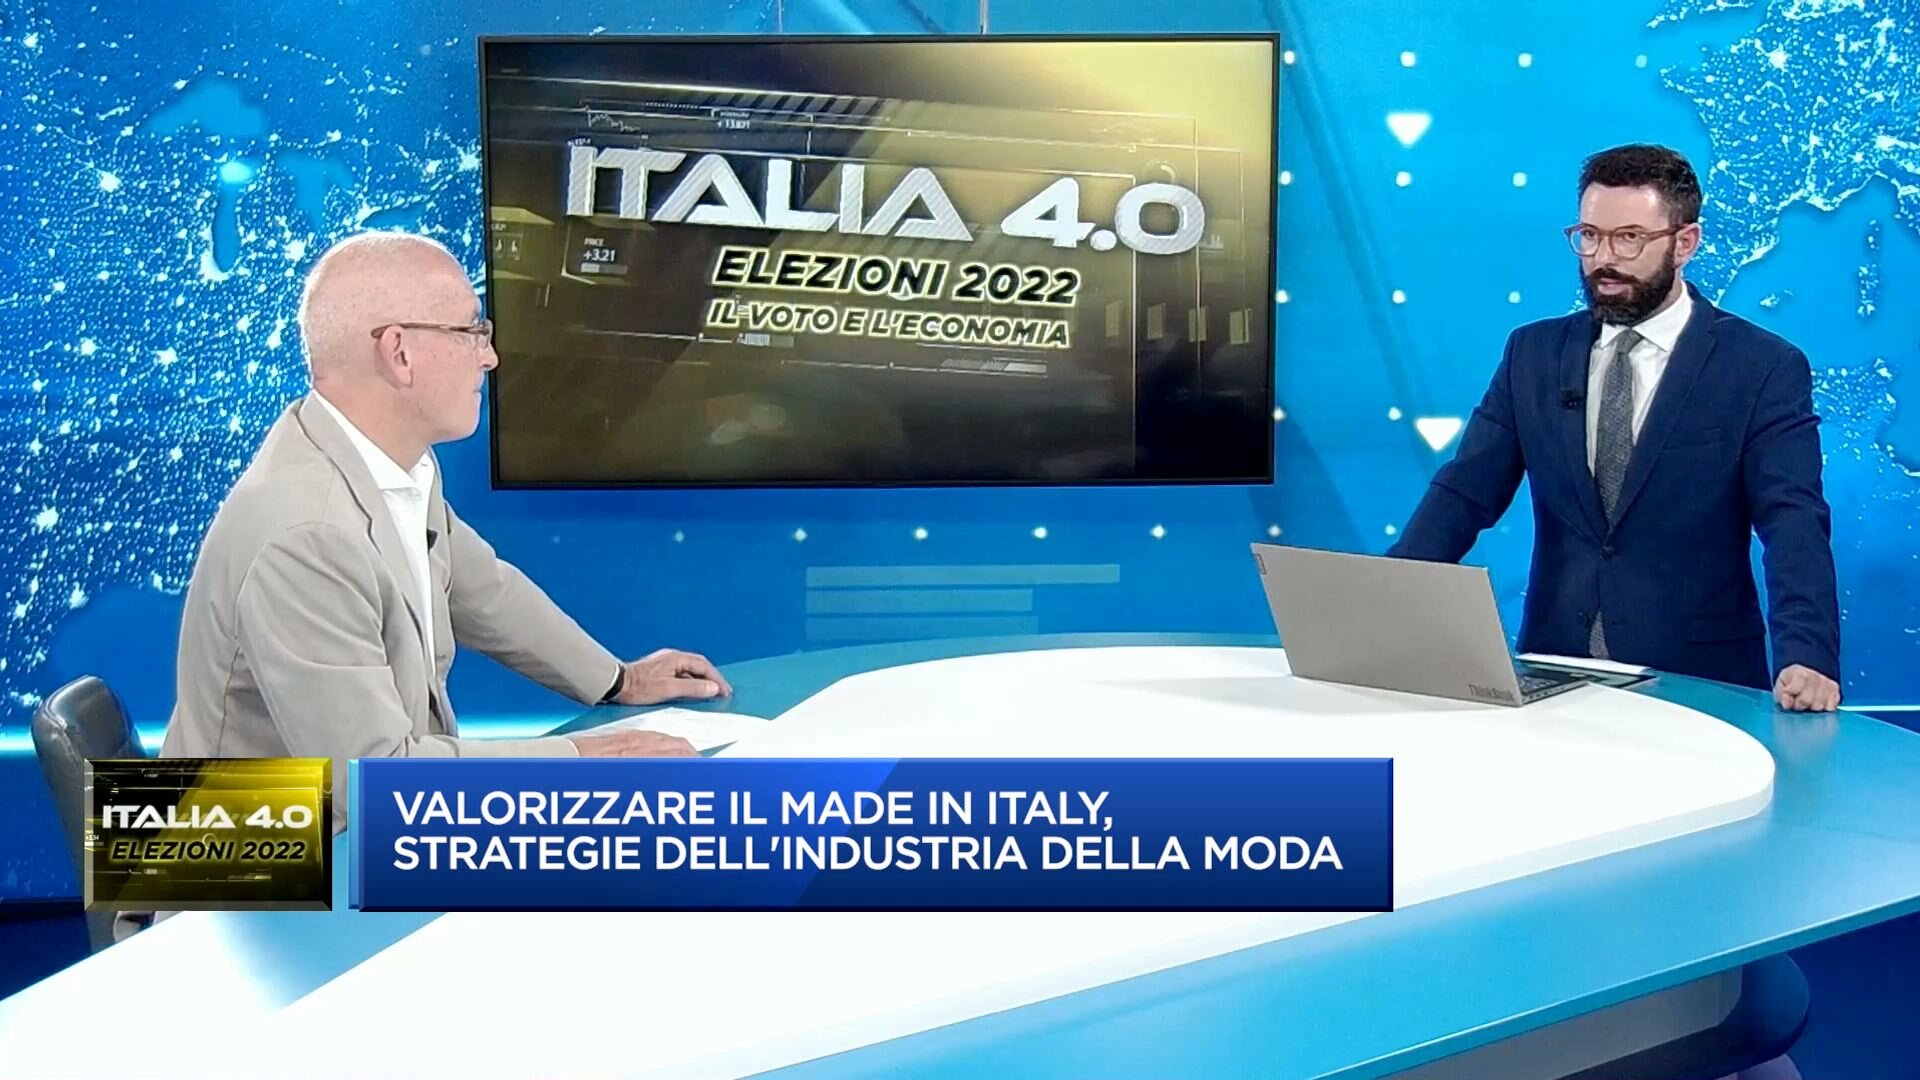 Italia 4.0 elezioni 2022 - Tamborini (Smi): rischio competitività e delocalizzazione per parte della filiera